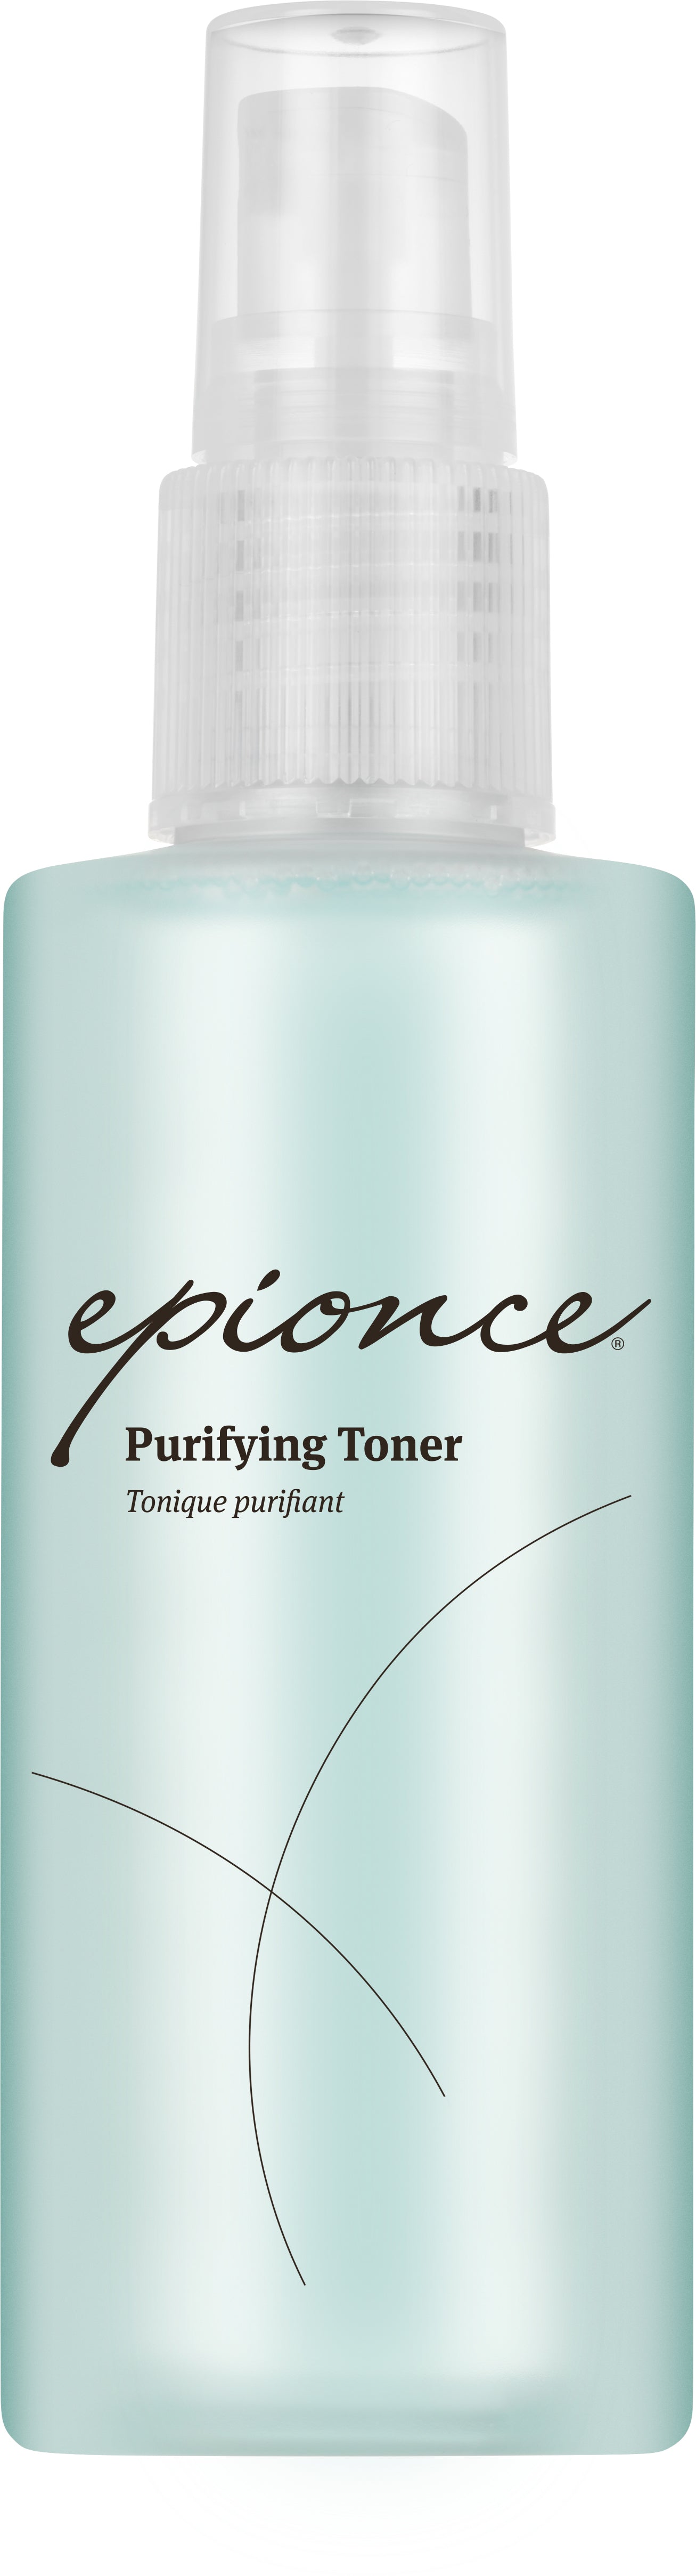 Epionce | Purifying Toner (120ml)